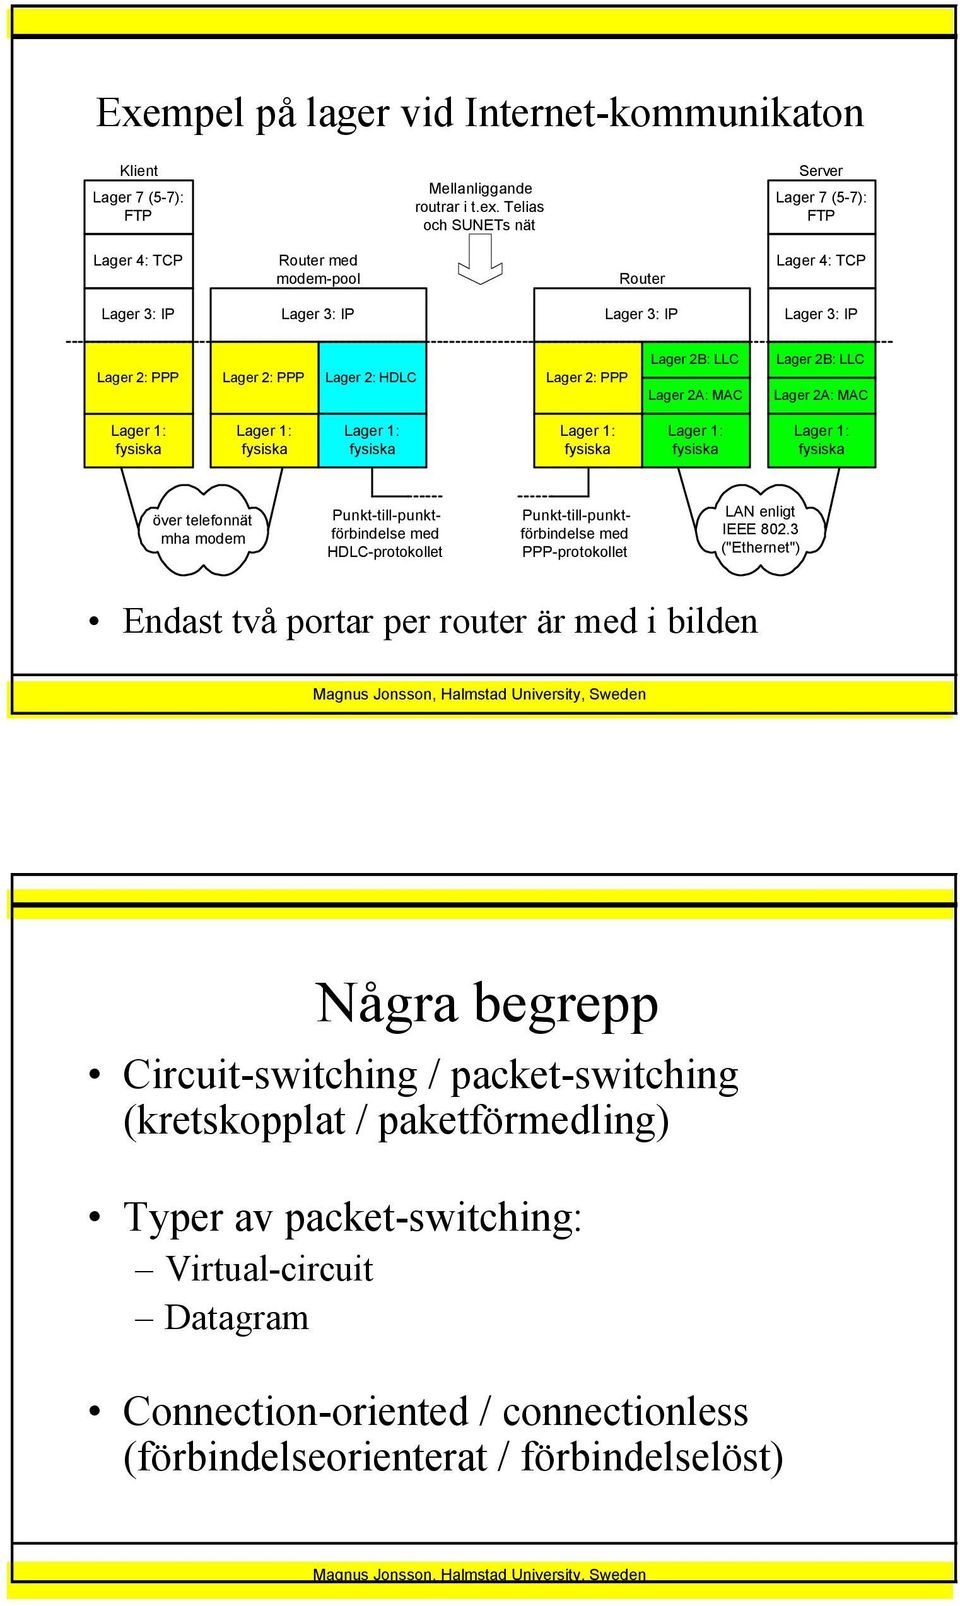 MAC Lager 2B: LLC Lager 2A: MAC över telefonnät mha modem Punkt-till-punktförbindelse med HDLC-protokollet Punkt-till-punktförbindelse med PPP-protokollet LAN enligt IEEE 802.